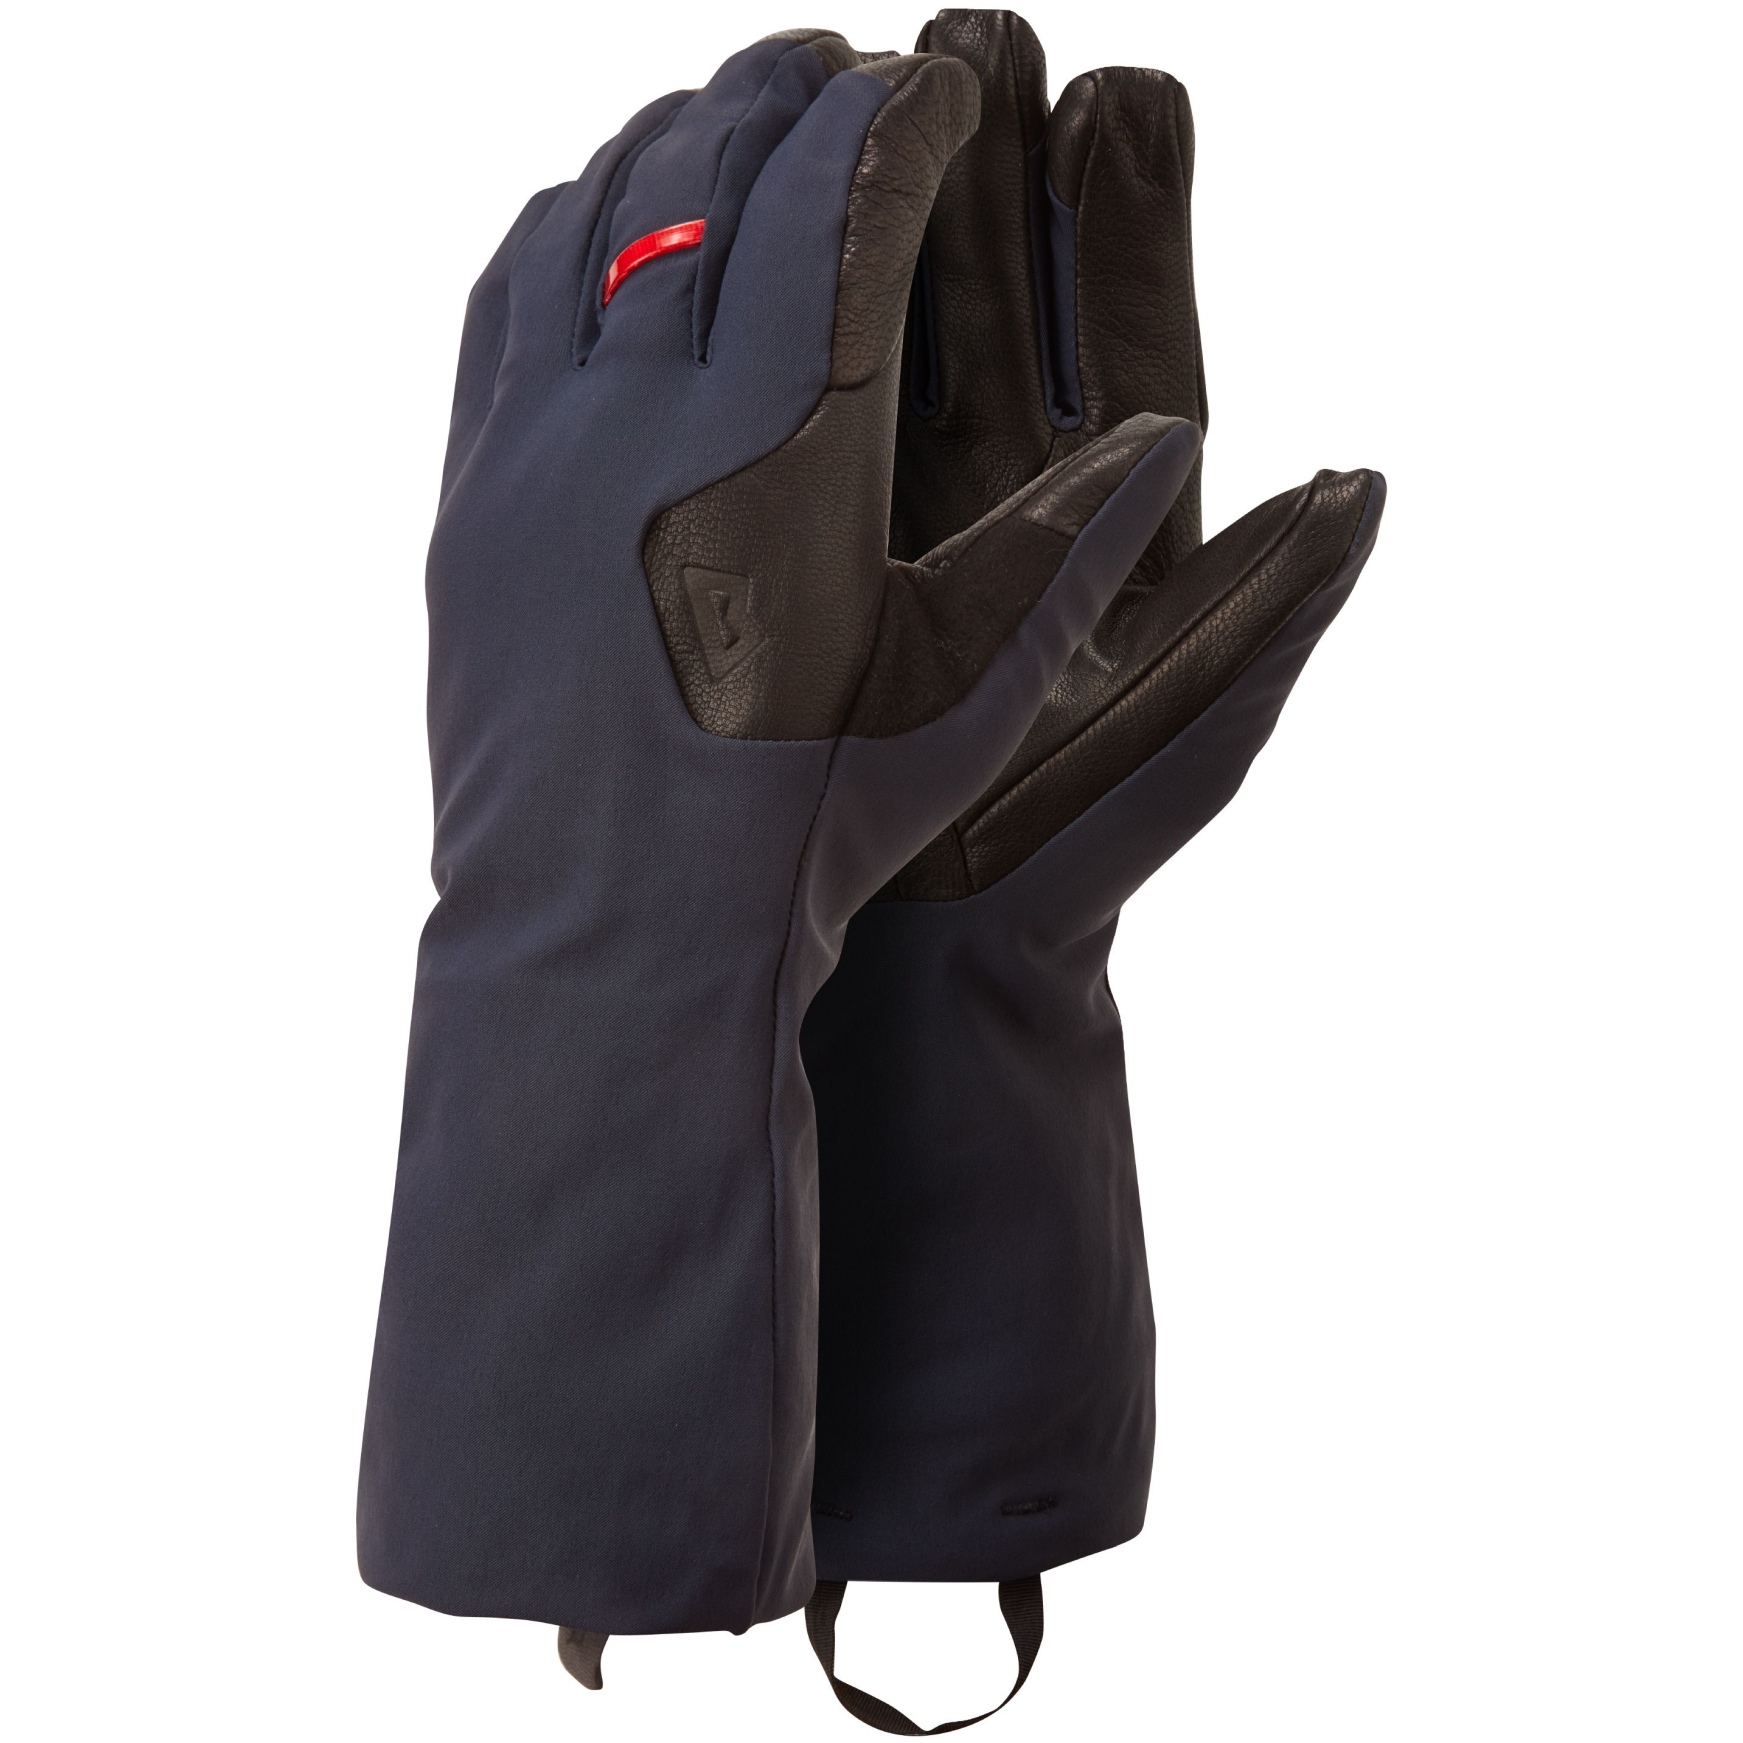 Productfoto van Mountain Equipment Randonee Gauntlet Handschoenen ME-005668 - cosmos/black